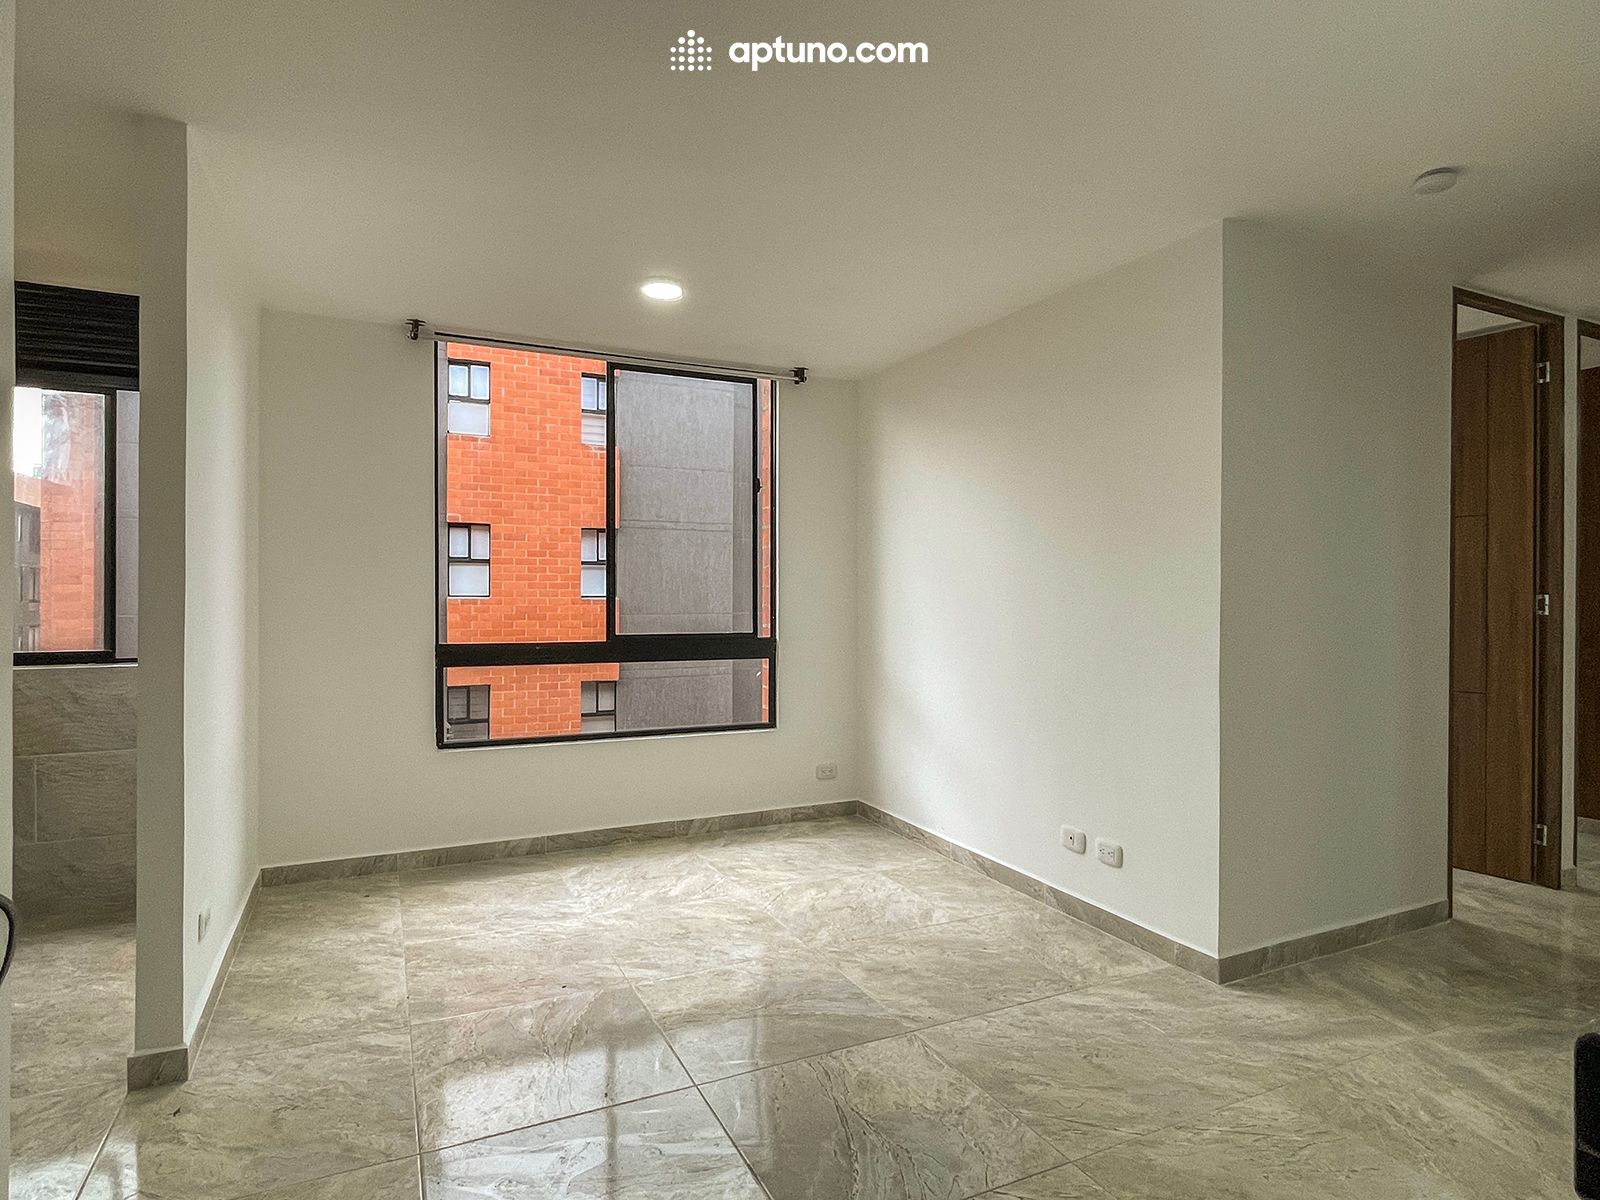 Apartamento en arriendo Chía 55 m² - $ 1.200.000,00